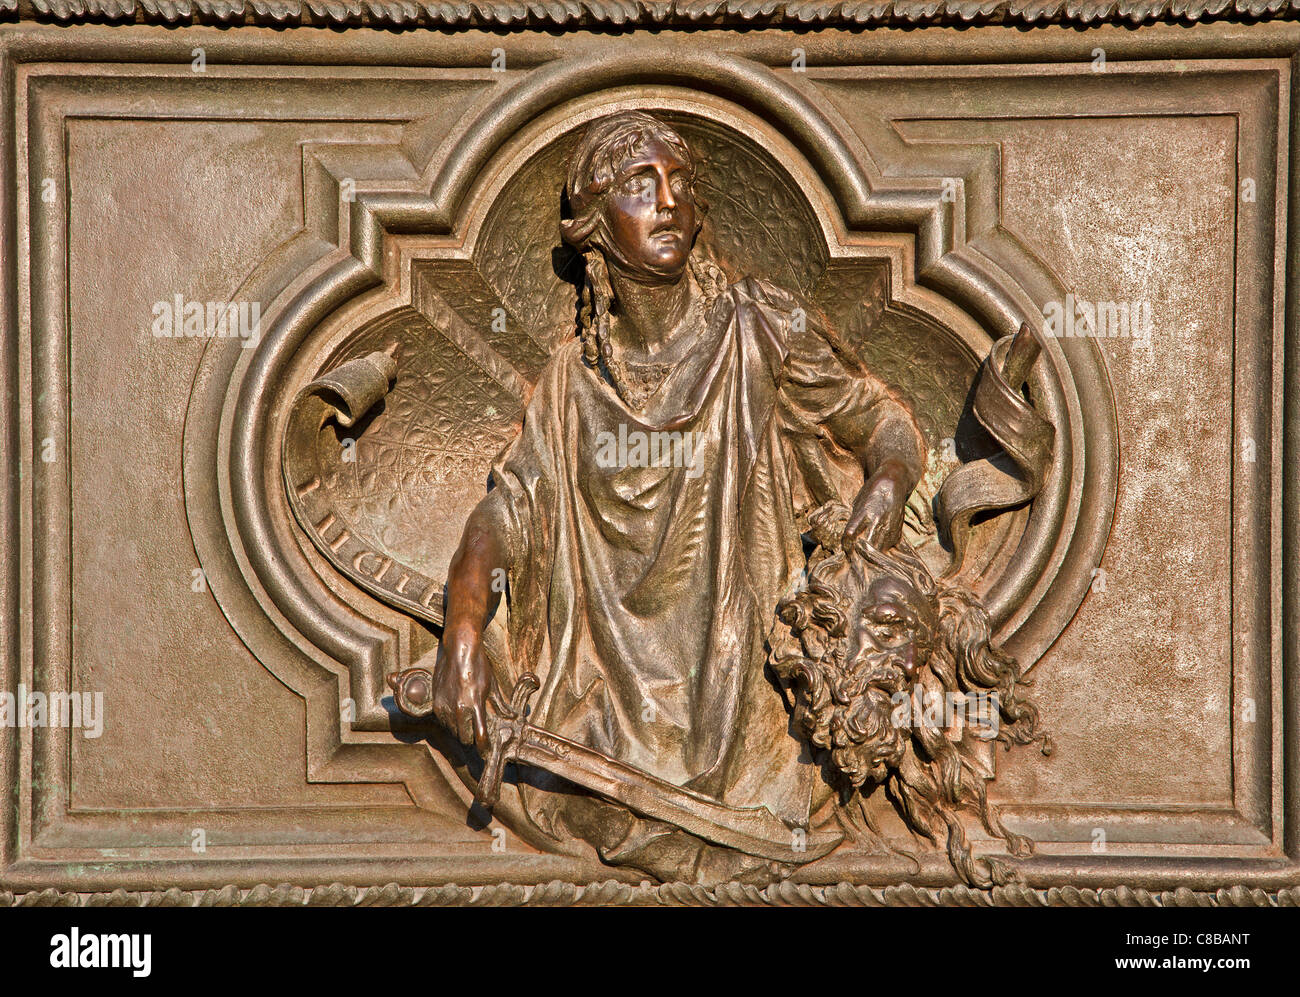 Milano - dettaglio dal principale porta di bronzo - Giuditta con la testa di Oloferne, Ludovico Pogliaghi, 1906 Foto Stock